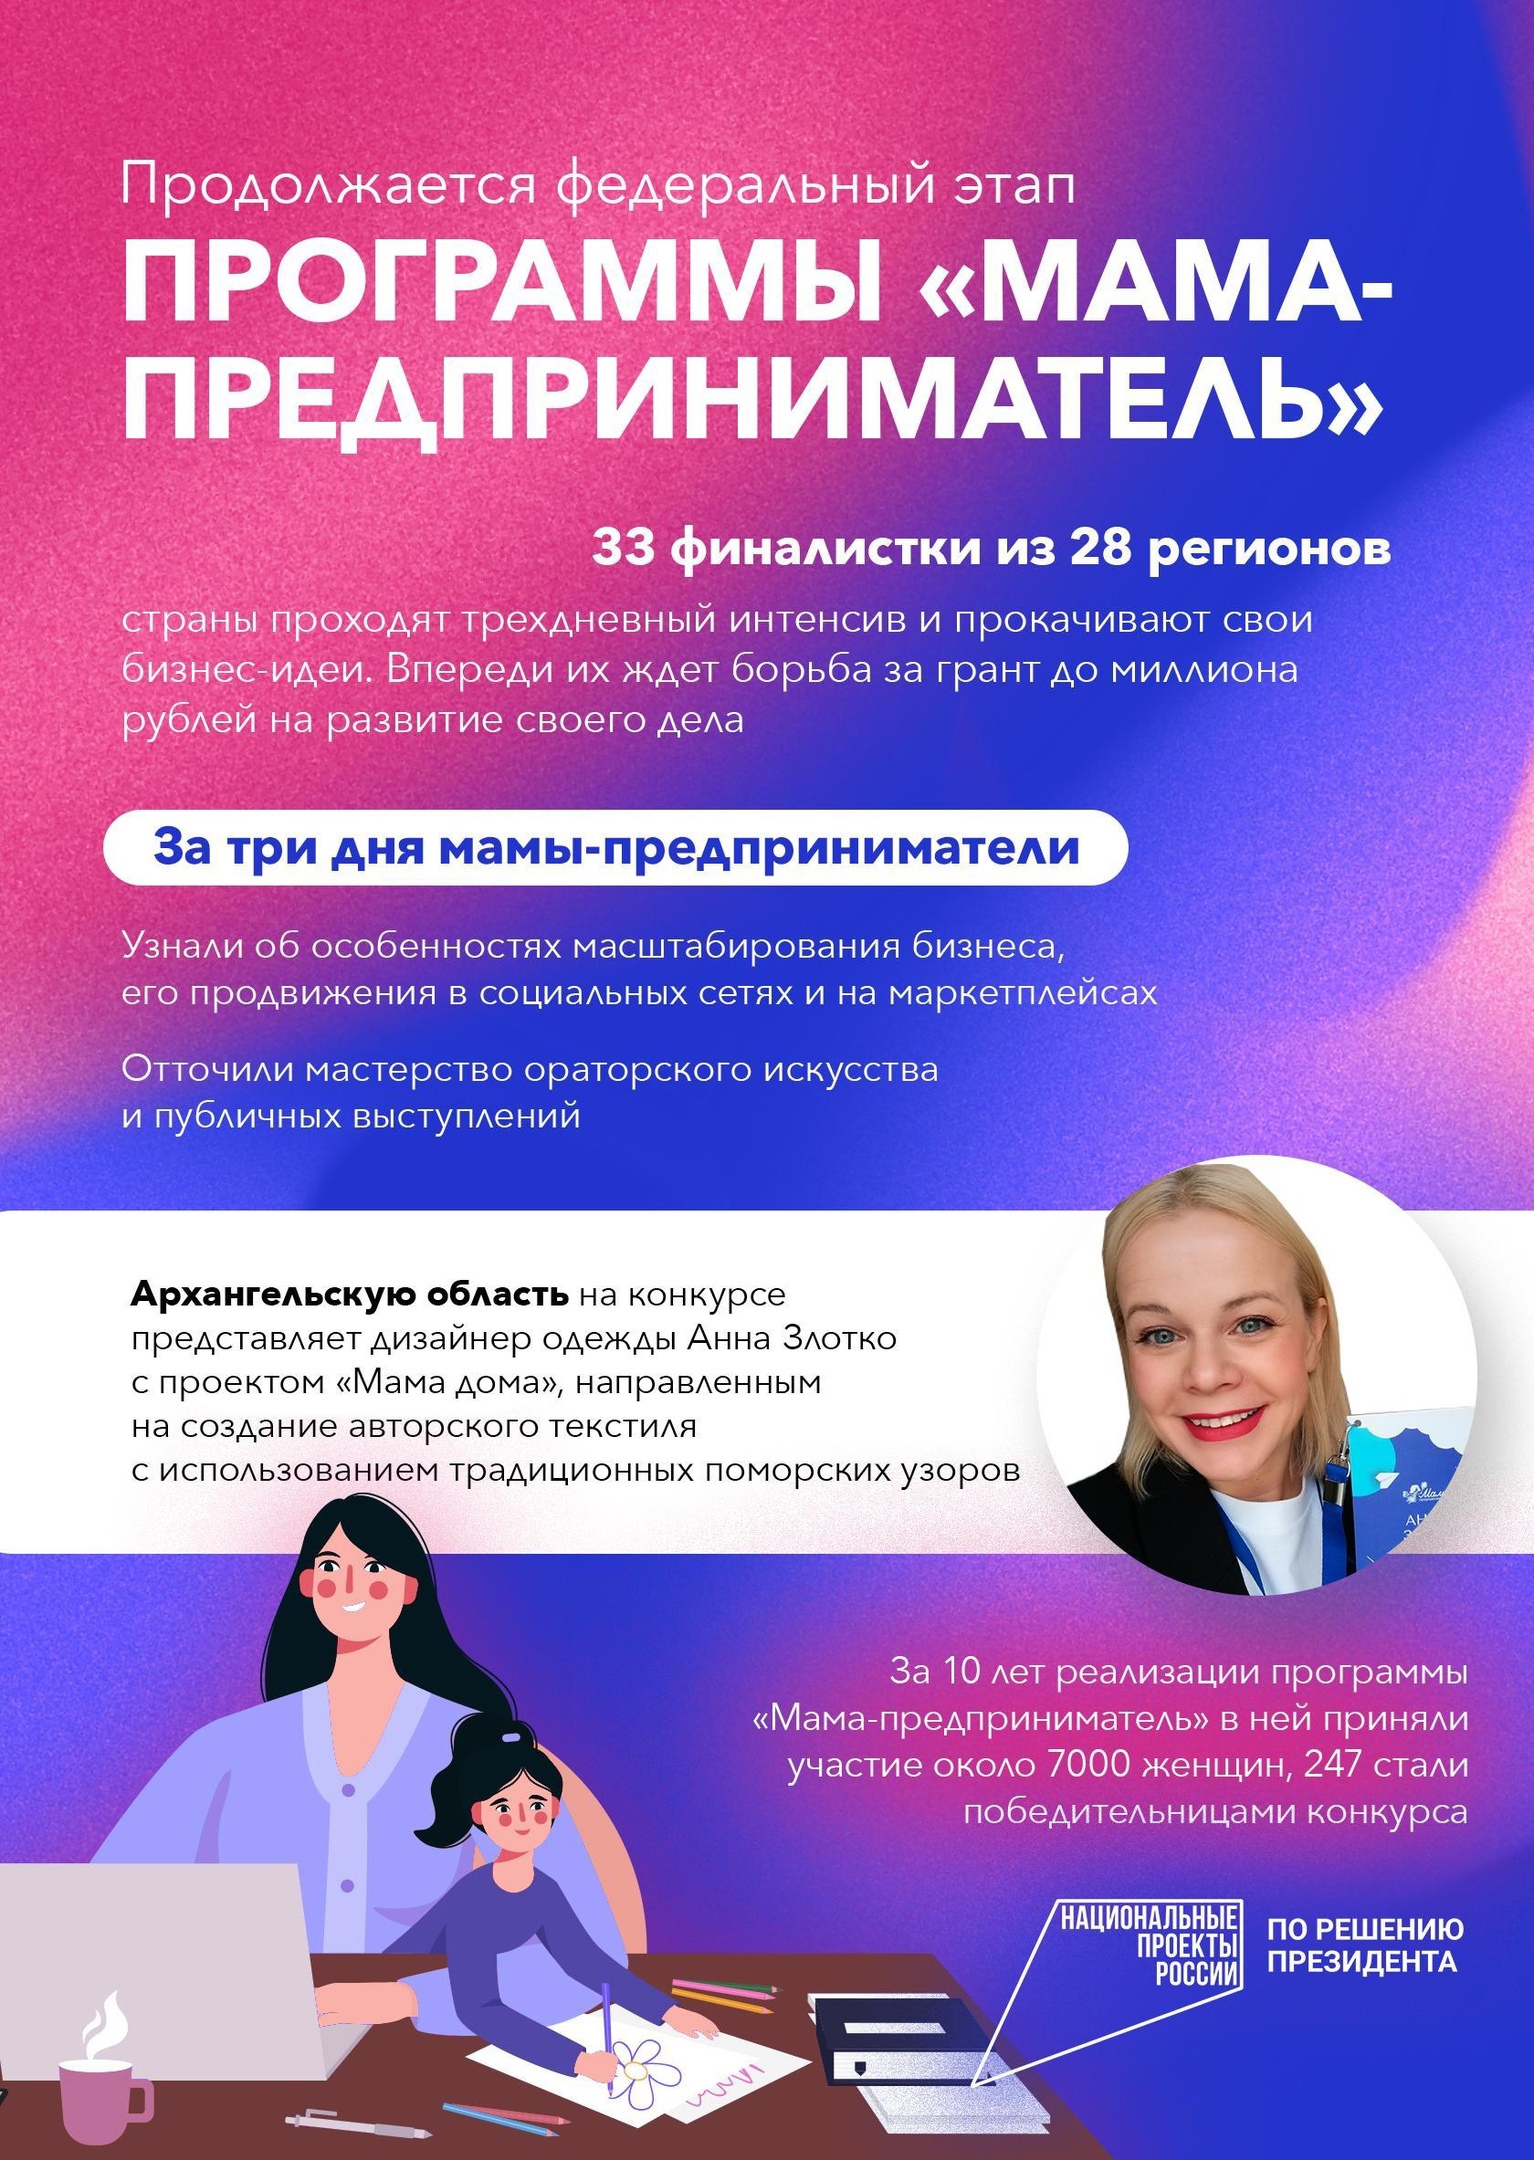 Недавно в Москве завершился трехдневный интенсив федерального этапа программы «Мама-предприниматель»